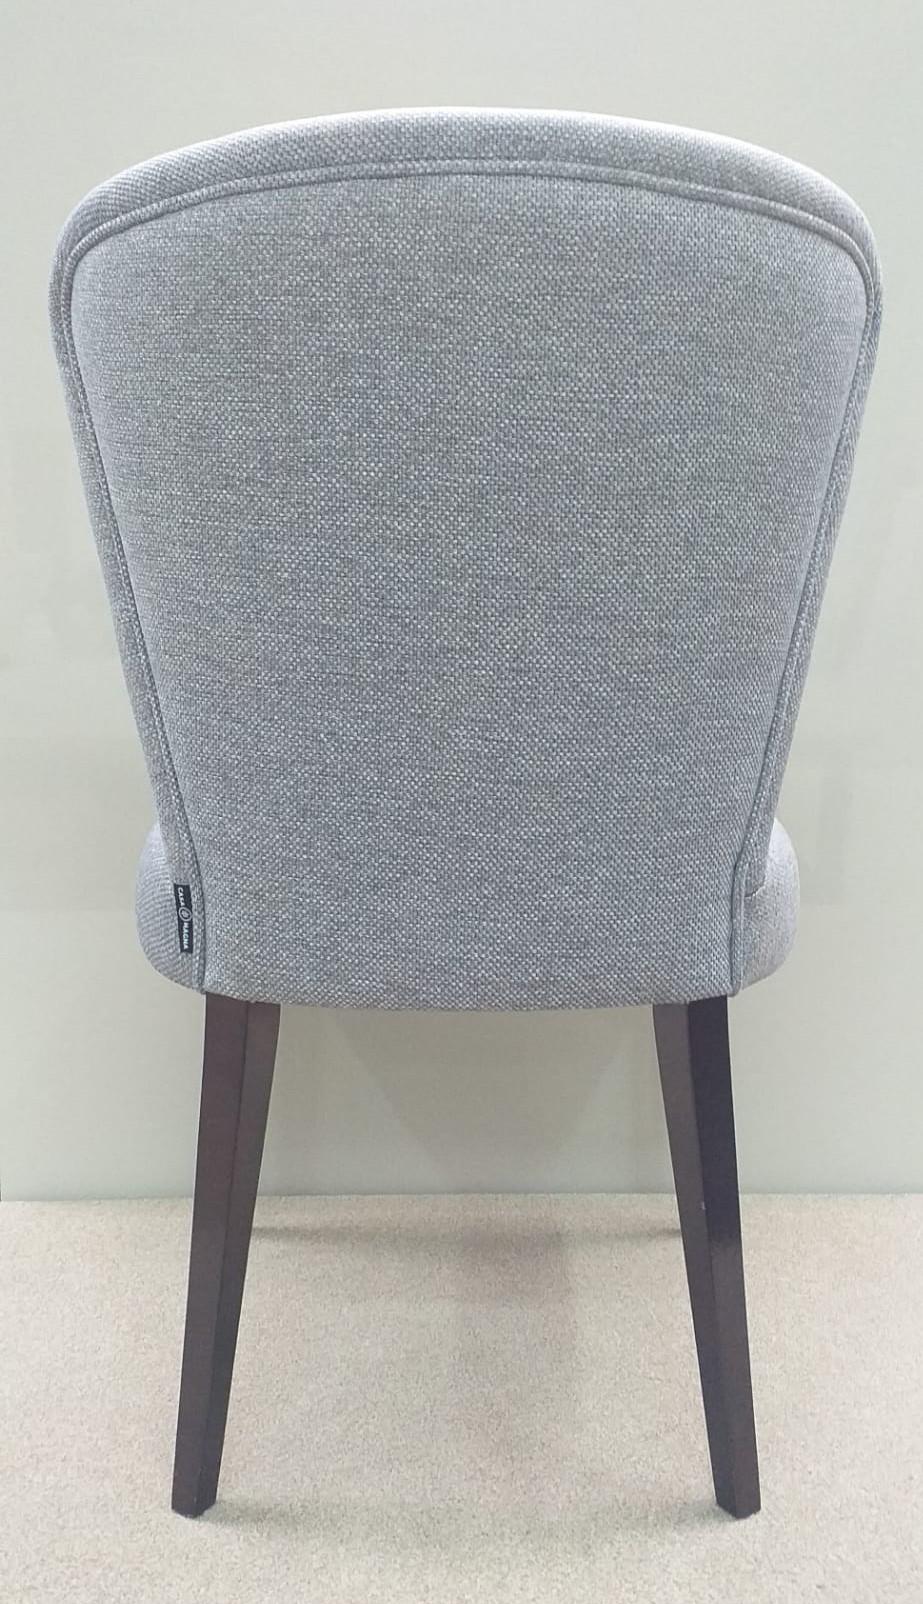 Bequemer und eleganter Stuhl für eine schöne Esszimmereinrichtung. 

Gepolstert mit Rusland FDG2733/01 kombiniert mit glänzenden Eiche wenguê Beine.